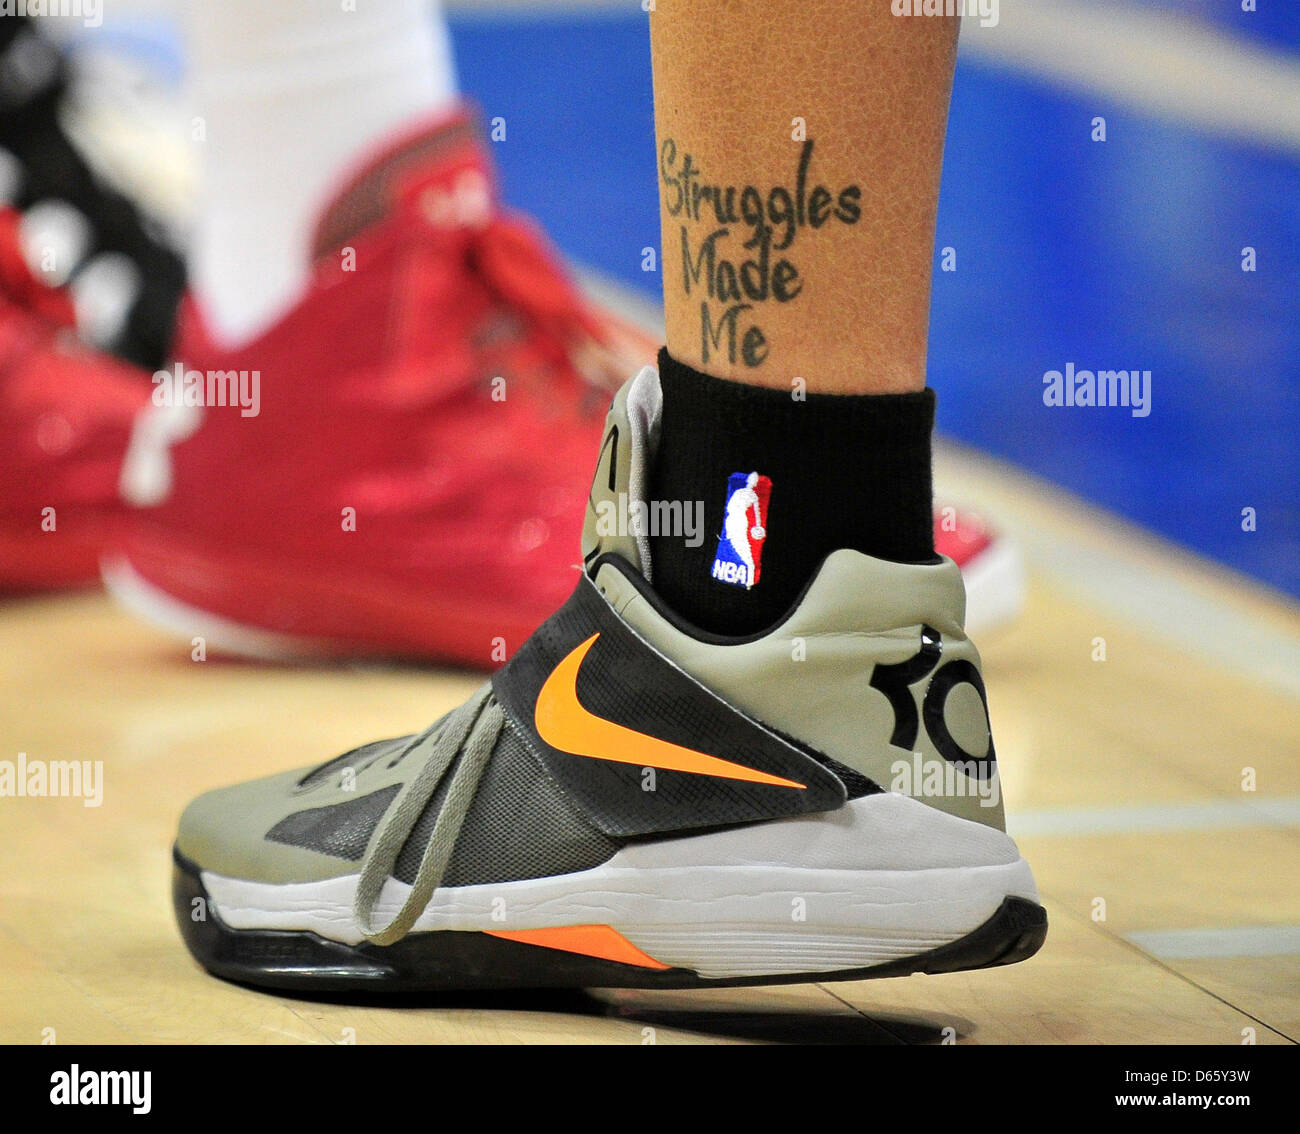 3 avril 2013 : ''STatouage m'a fait truggles'' de Michael Beasley # 0 de la NBA Suns en action de jeu comme l'hôte les Los Angeles Clippers les Phoenix Suns NBA dans un match au Staples Center de Los Angeles, Californie John Green/CSM Banque D'Images